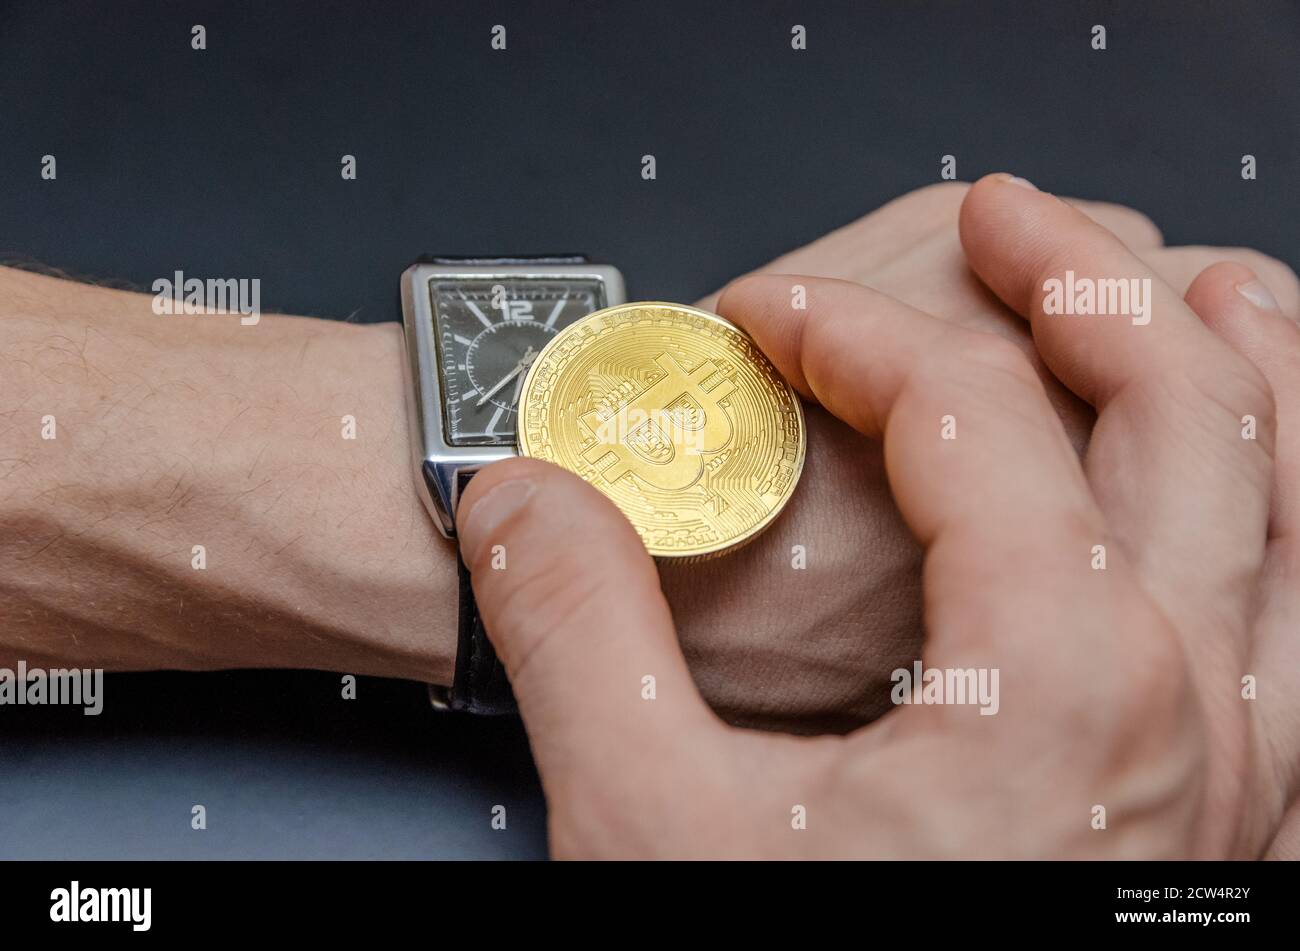 Las manos de hombre joven fijando el reloj con un penique de oro bitcoin, el concepto del tiempo para actuar Foto de stock